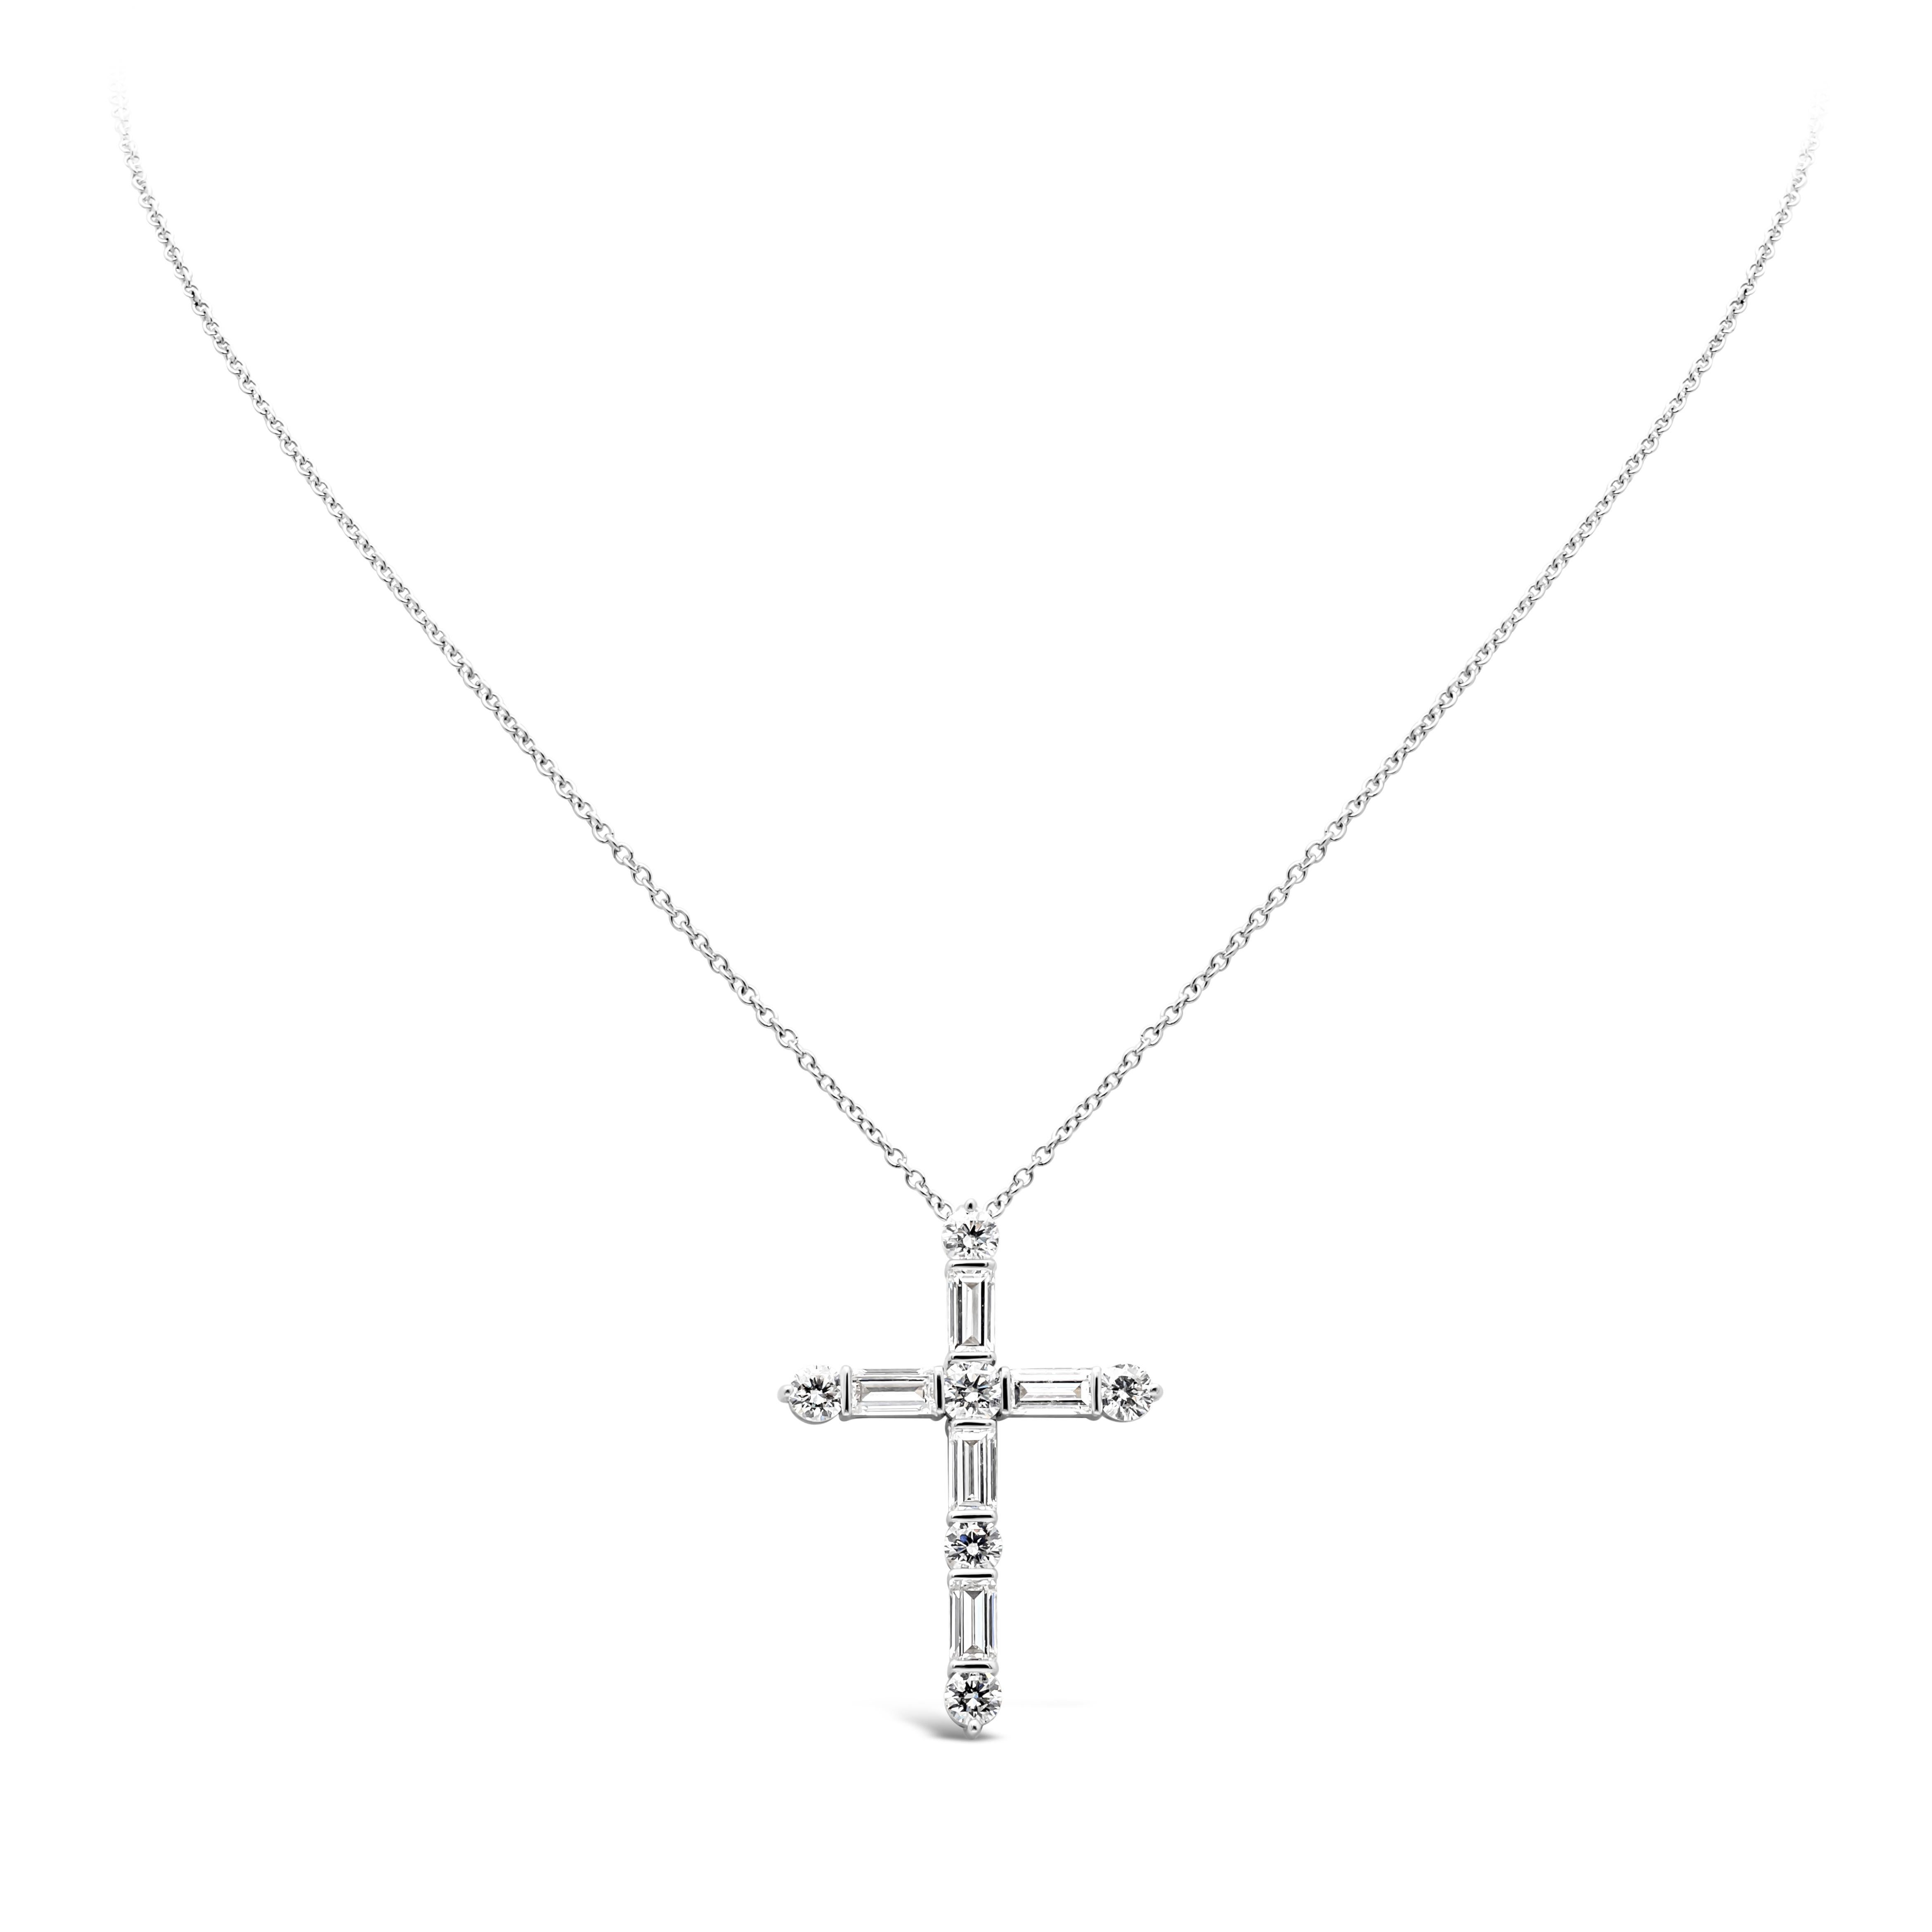 Le collier croix religieuse classique et simple est serti de diamants de taille baguette et de diamants ronds de taille brillant pesant 2,53 carats au total, de couleur G et de pureté VS respectivement. Whiting sur une chaîne réglable en or blanc de